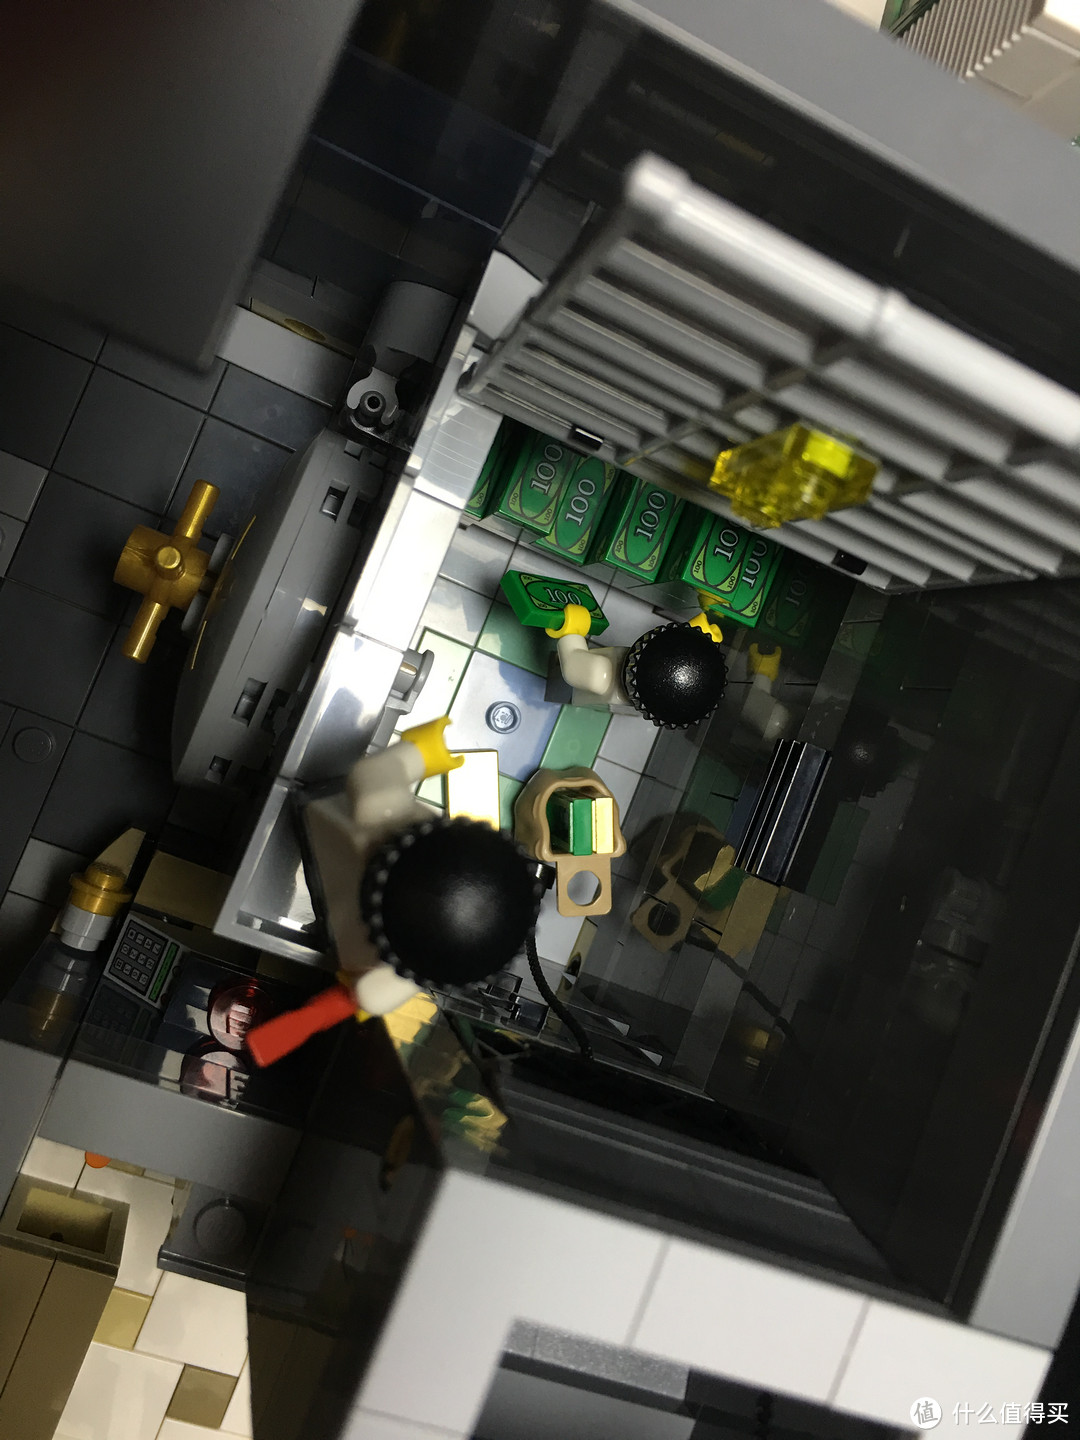 入坑只选值的：LEGO 乐高 10251 转角银行